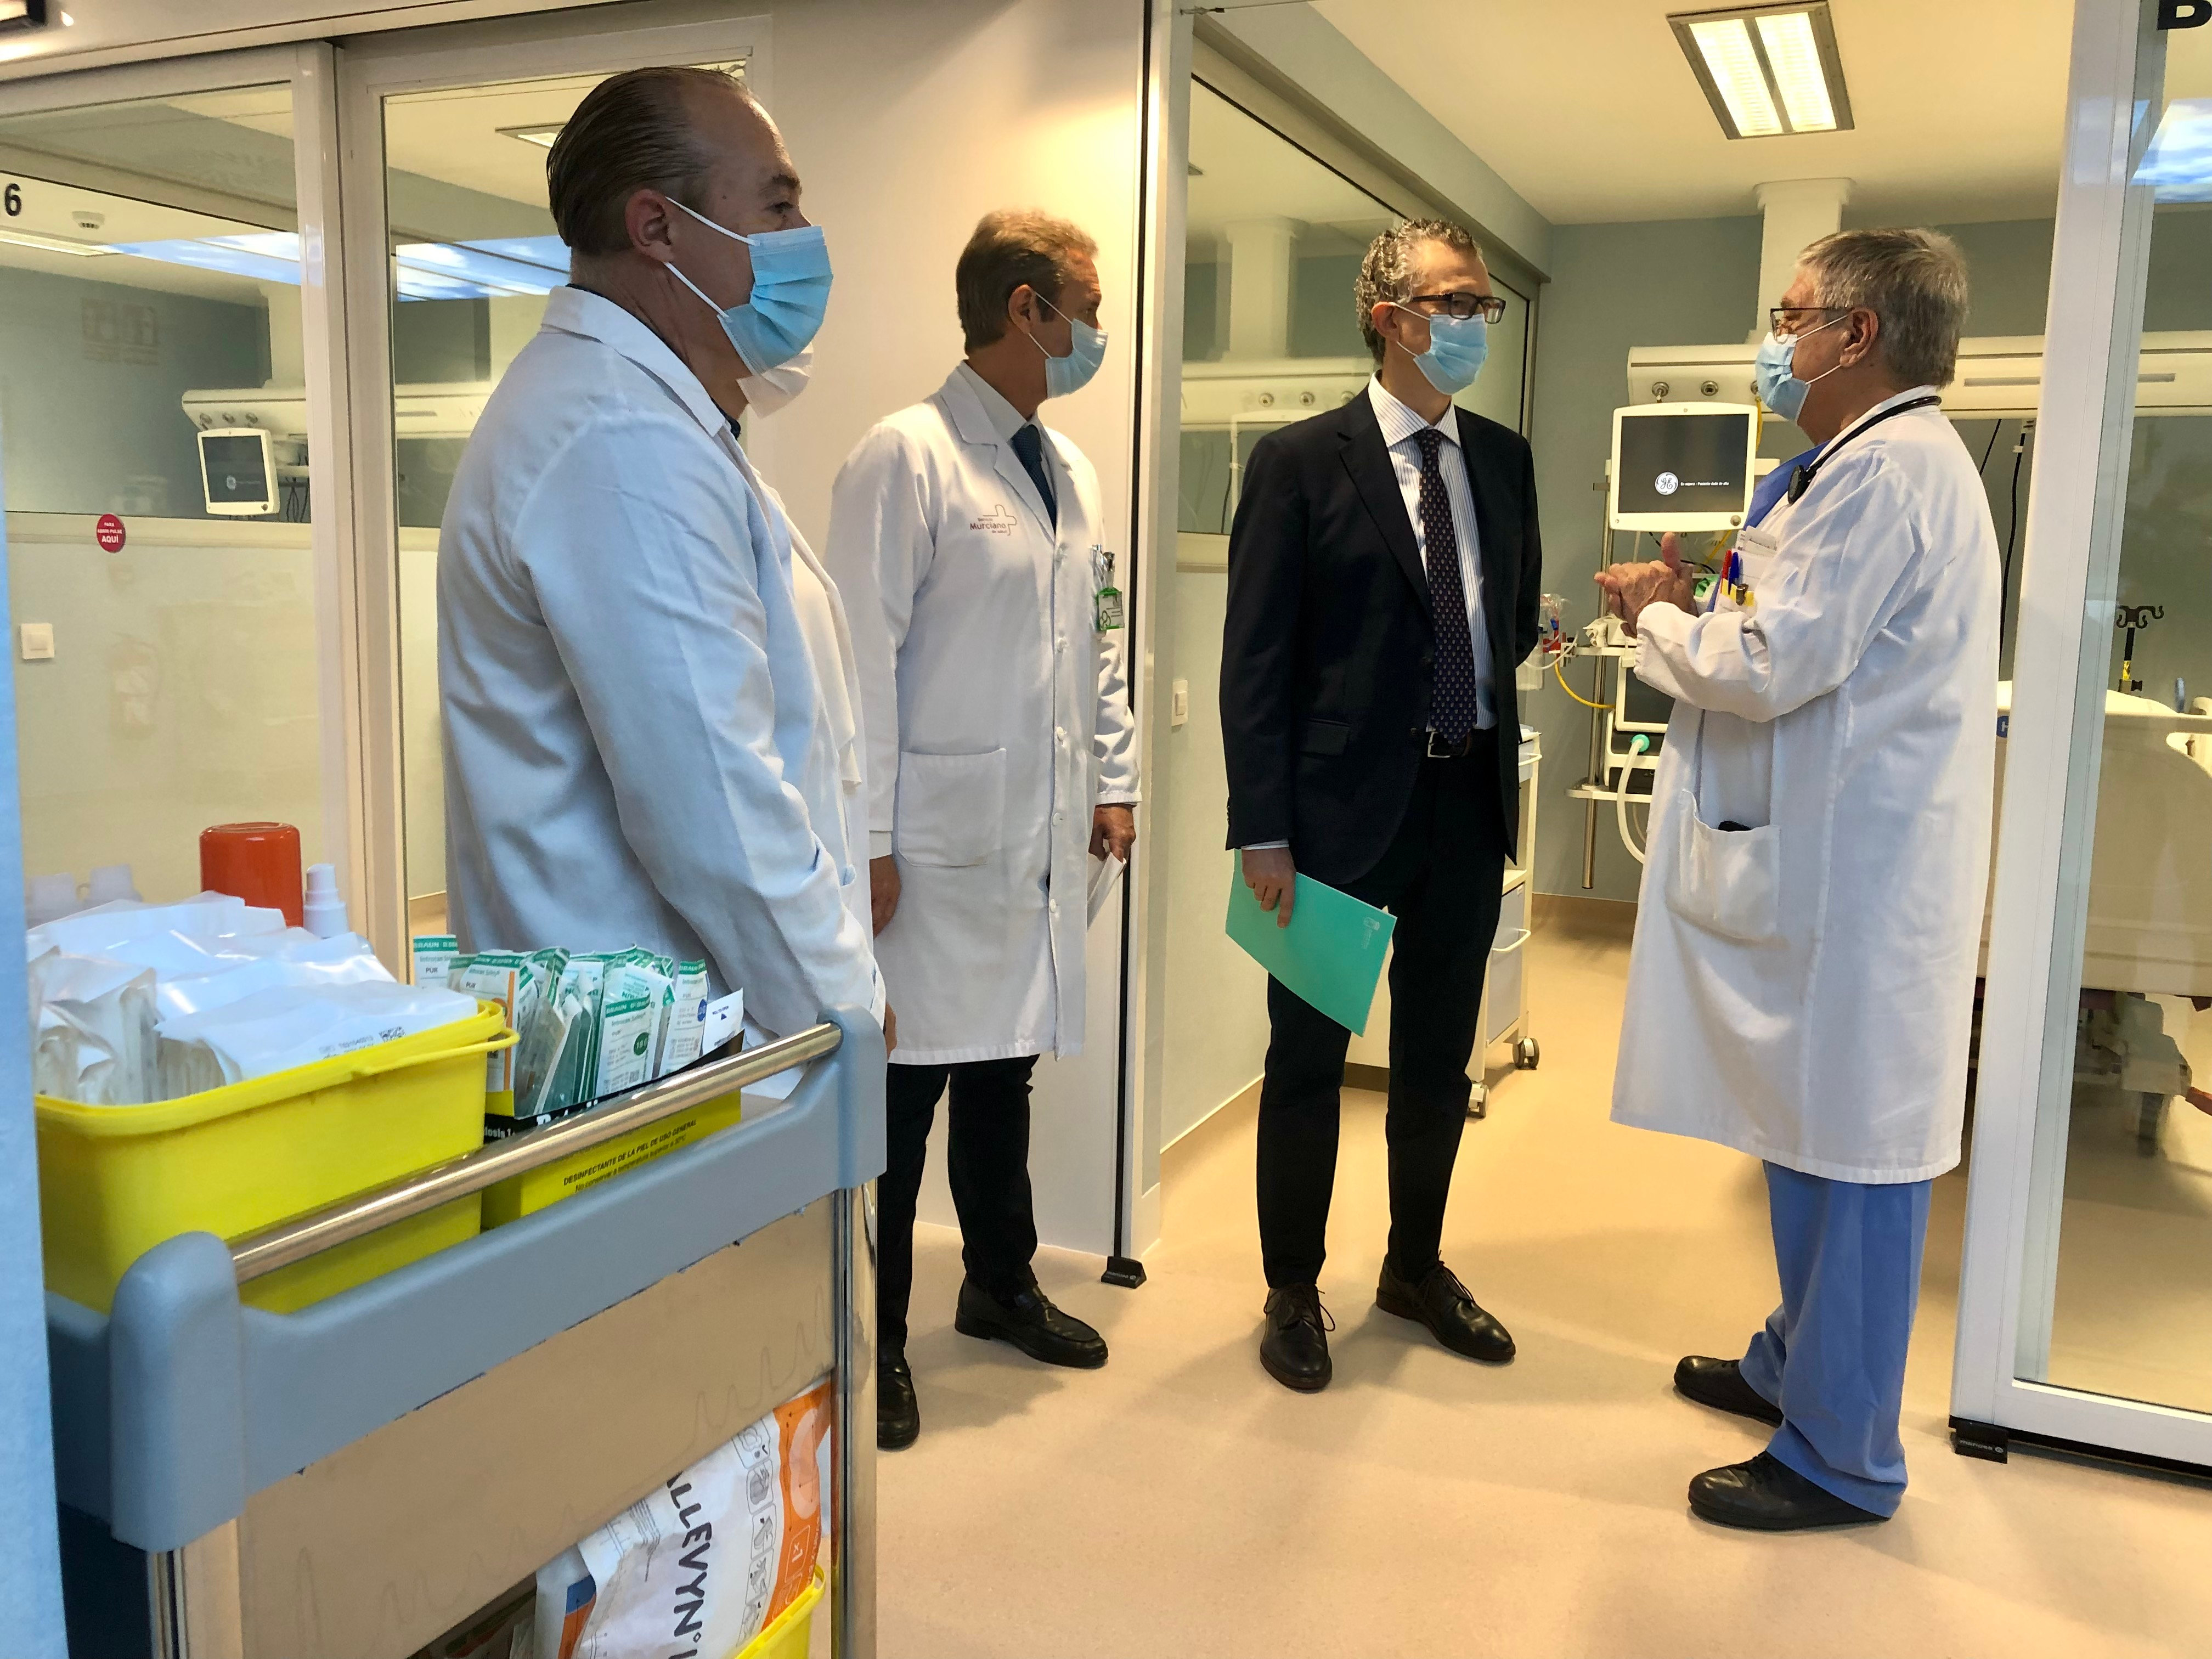 El consejero de Salud, Juan José Pedreño, visitó hoy el hospital general universitario Reina Sofía con motivo de las obras de mejora realizadas en sus instalaciones